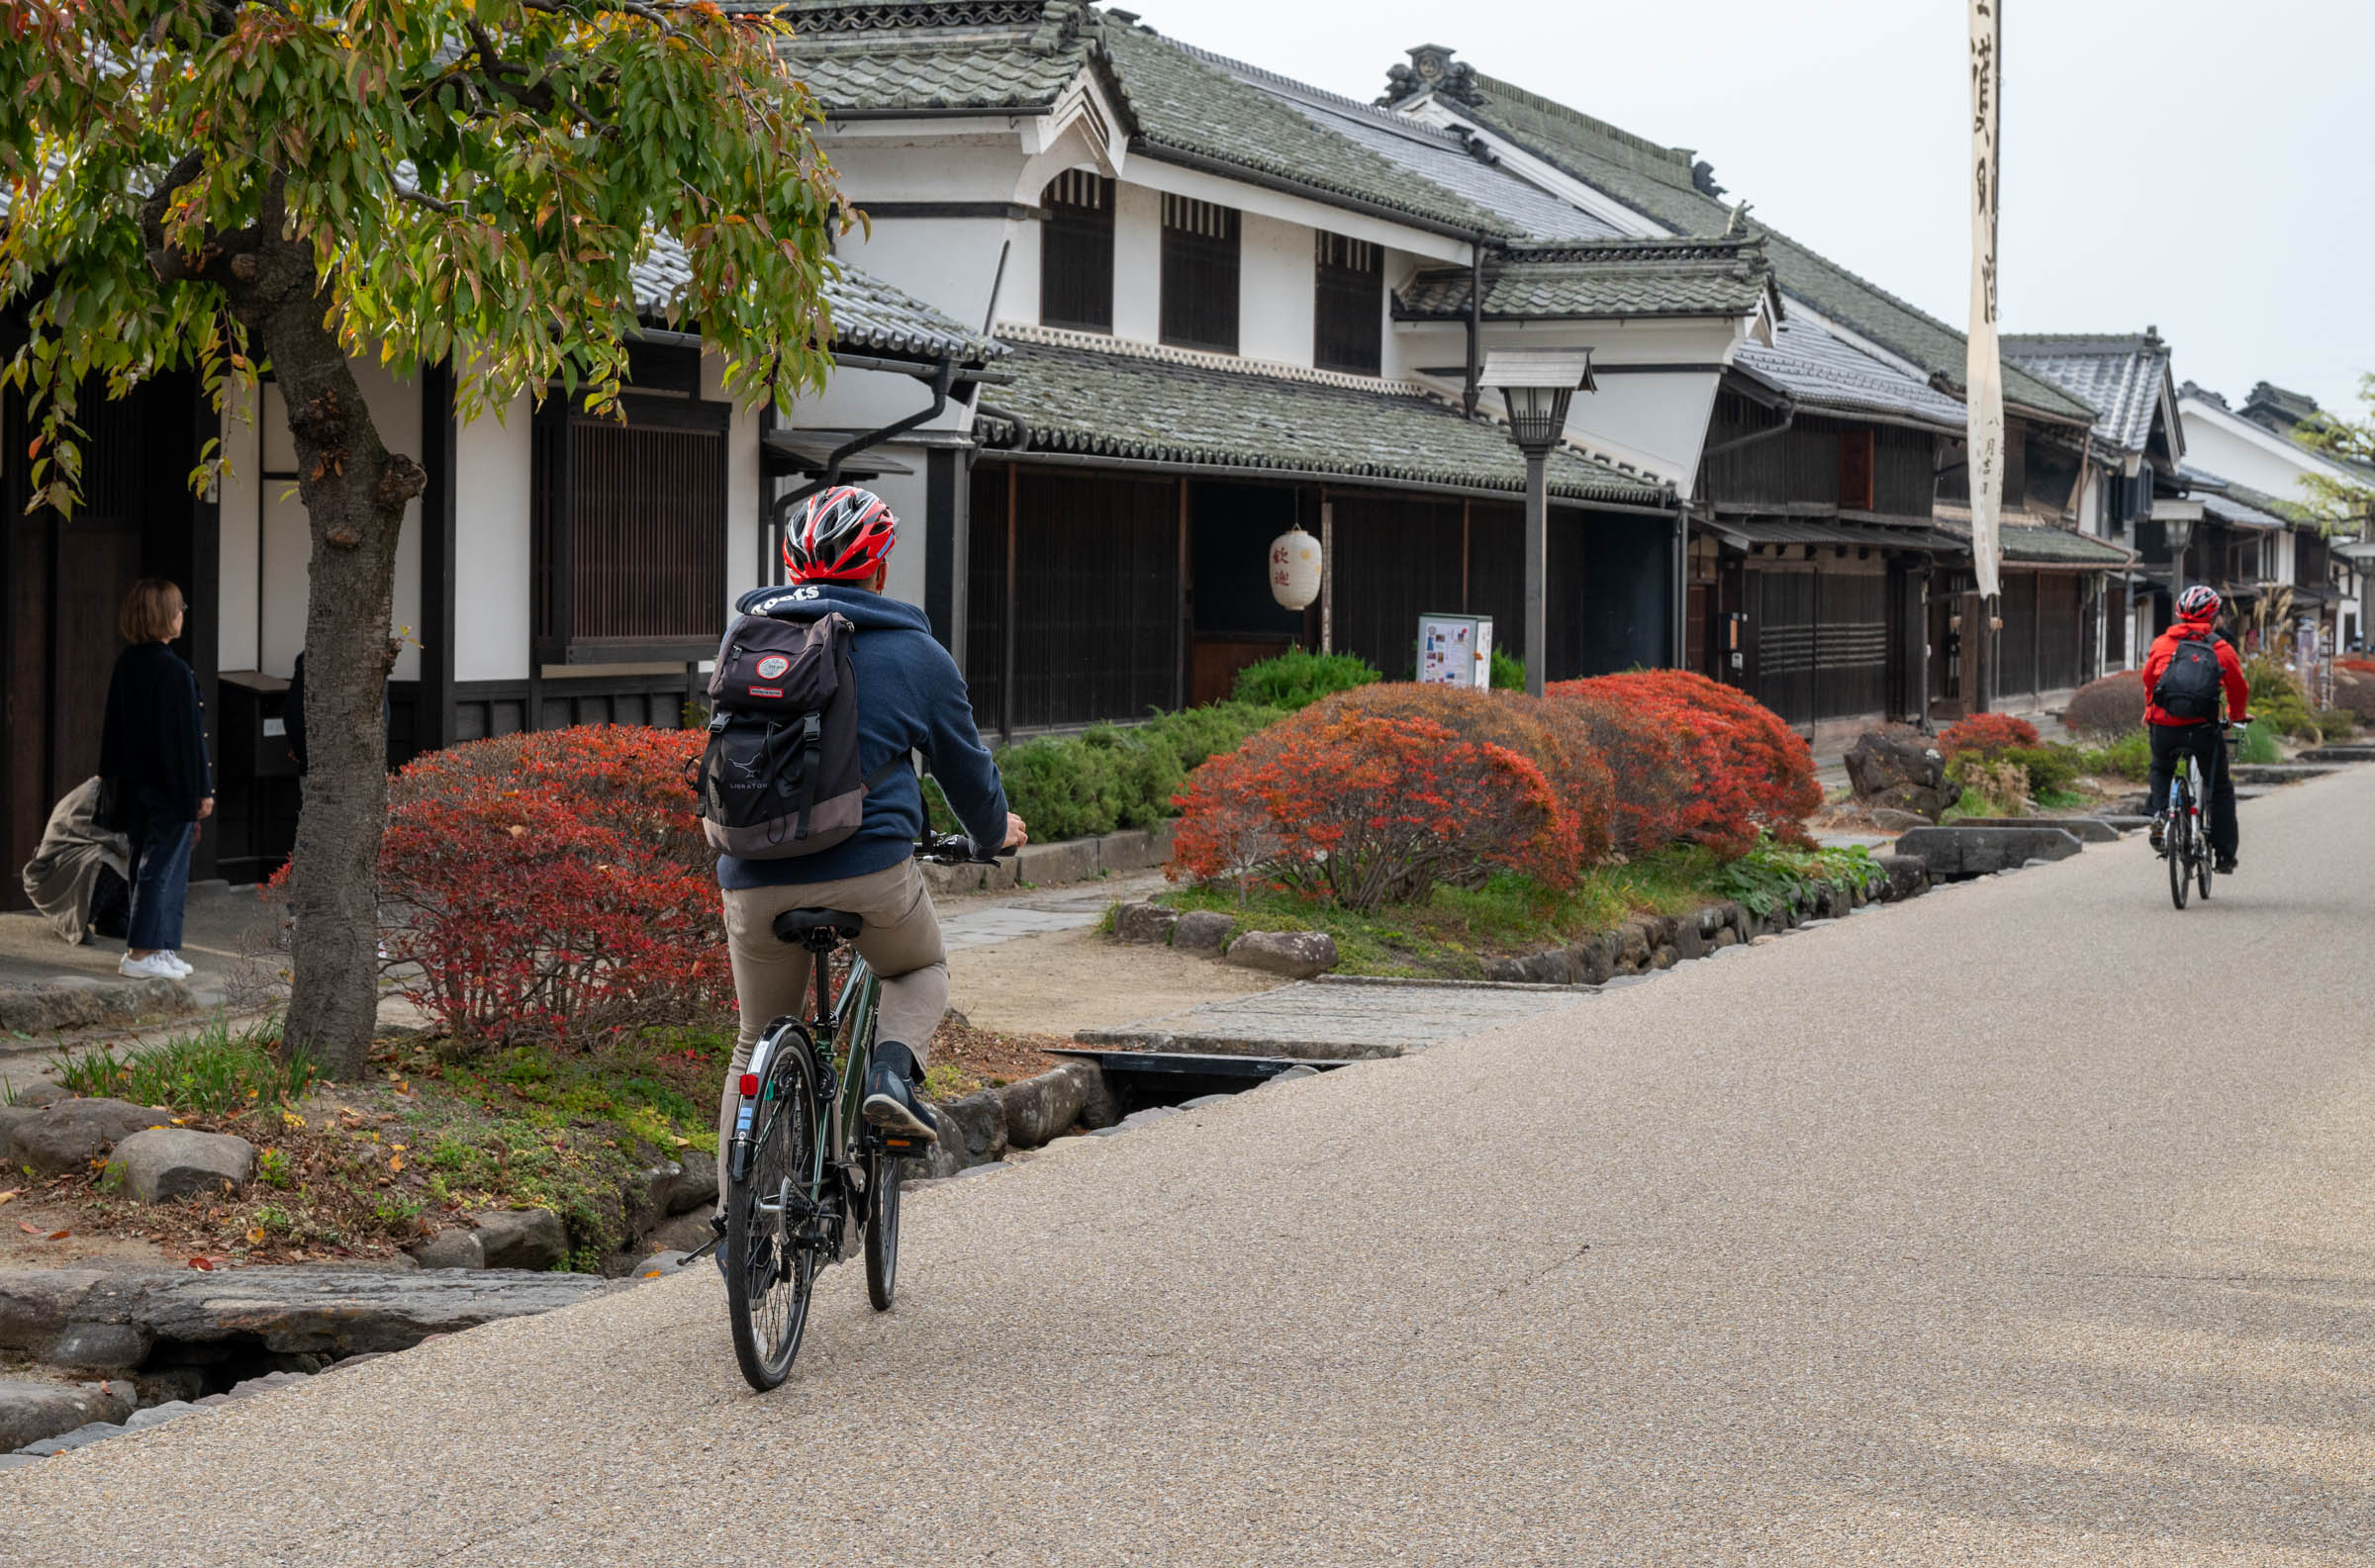 【信浓铁路的自行车列车】 畅游轻井泽，寻觅历史痕迹的自行车之旅